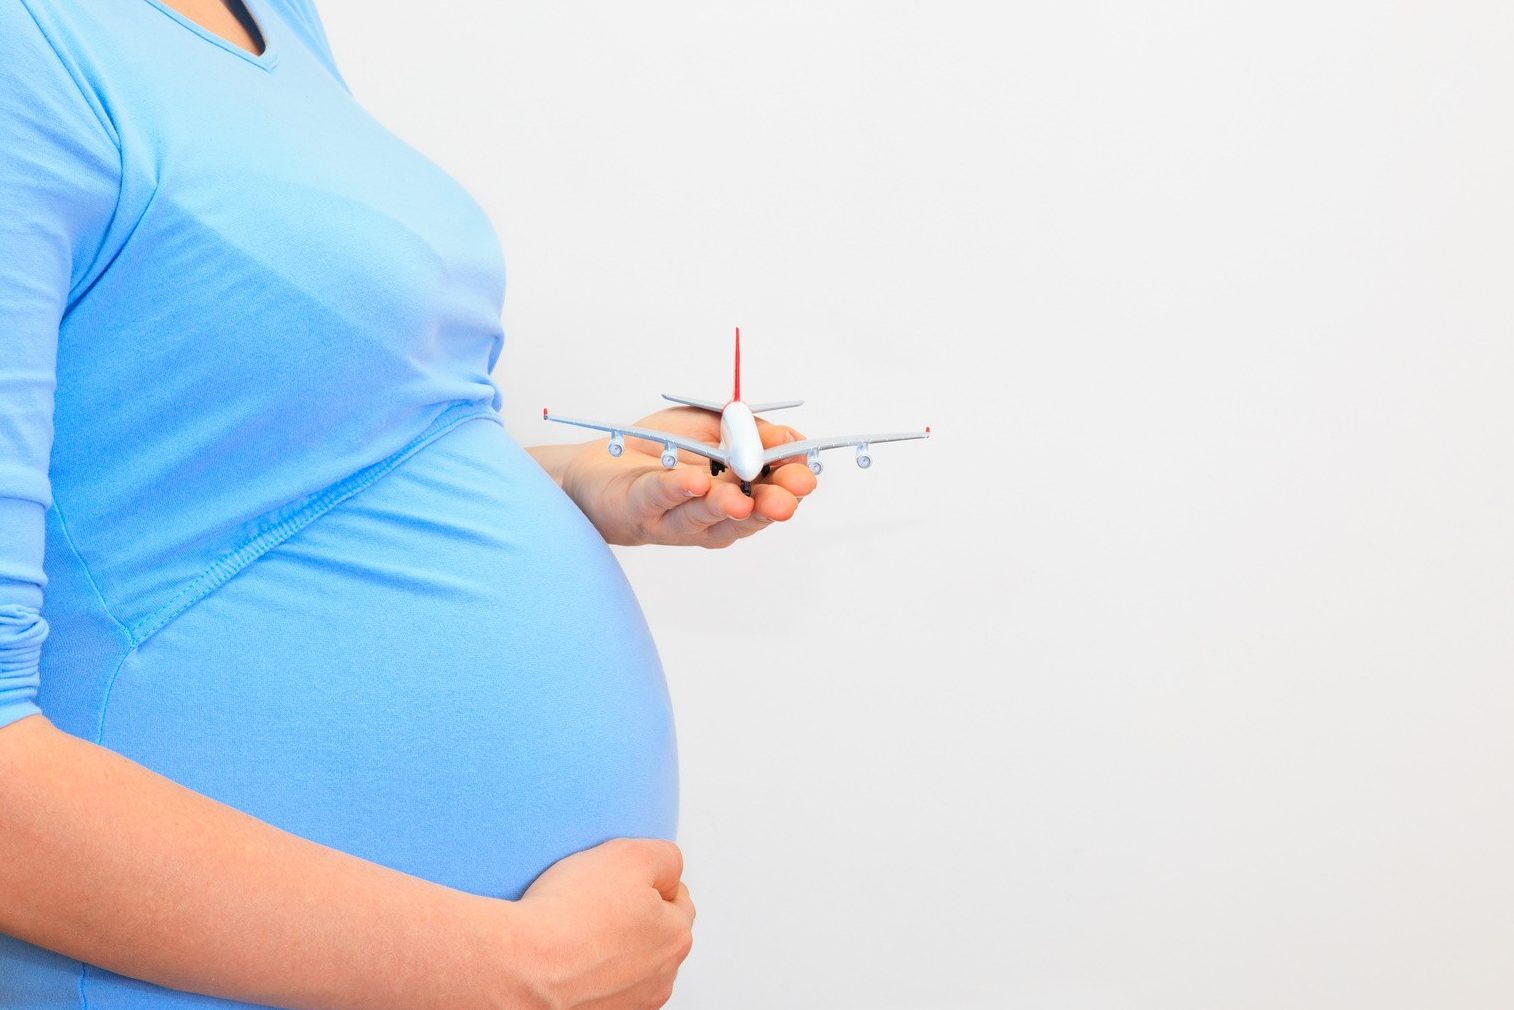 До какой недели беременности можно пользоваться услугами авиаперелетов: вредно ли летать, до какой недели безопасно и что стоит помнить